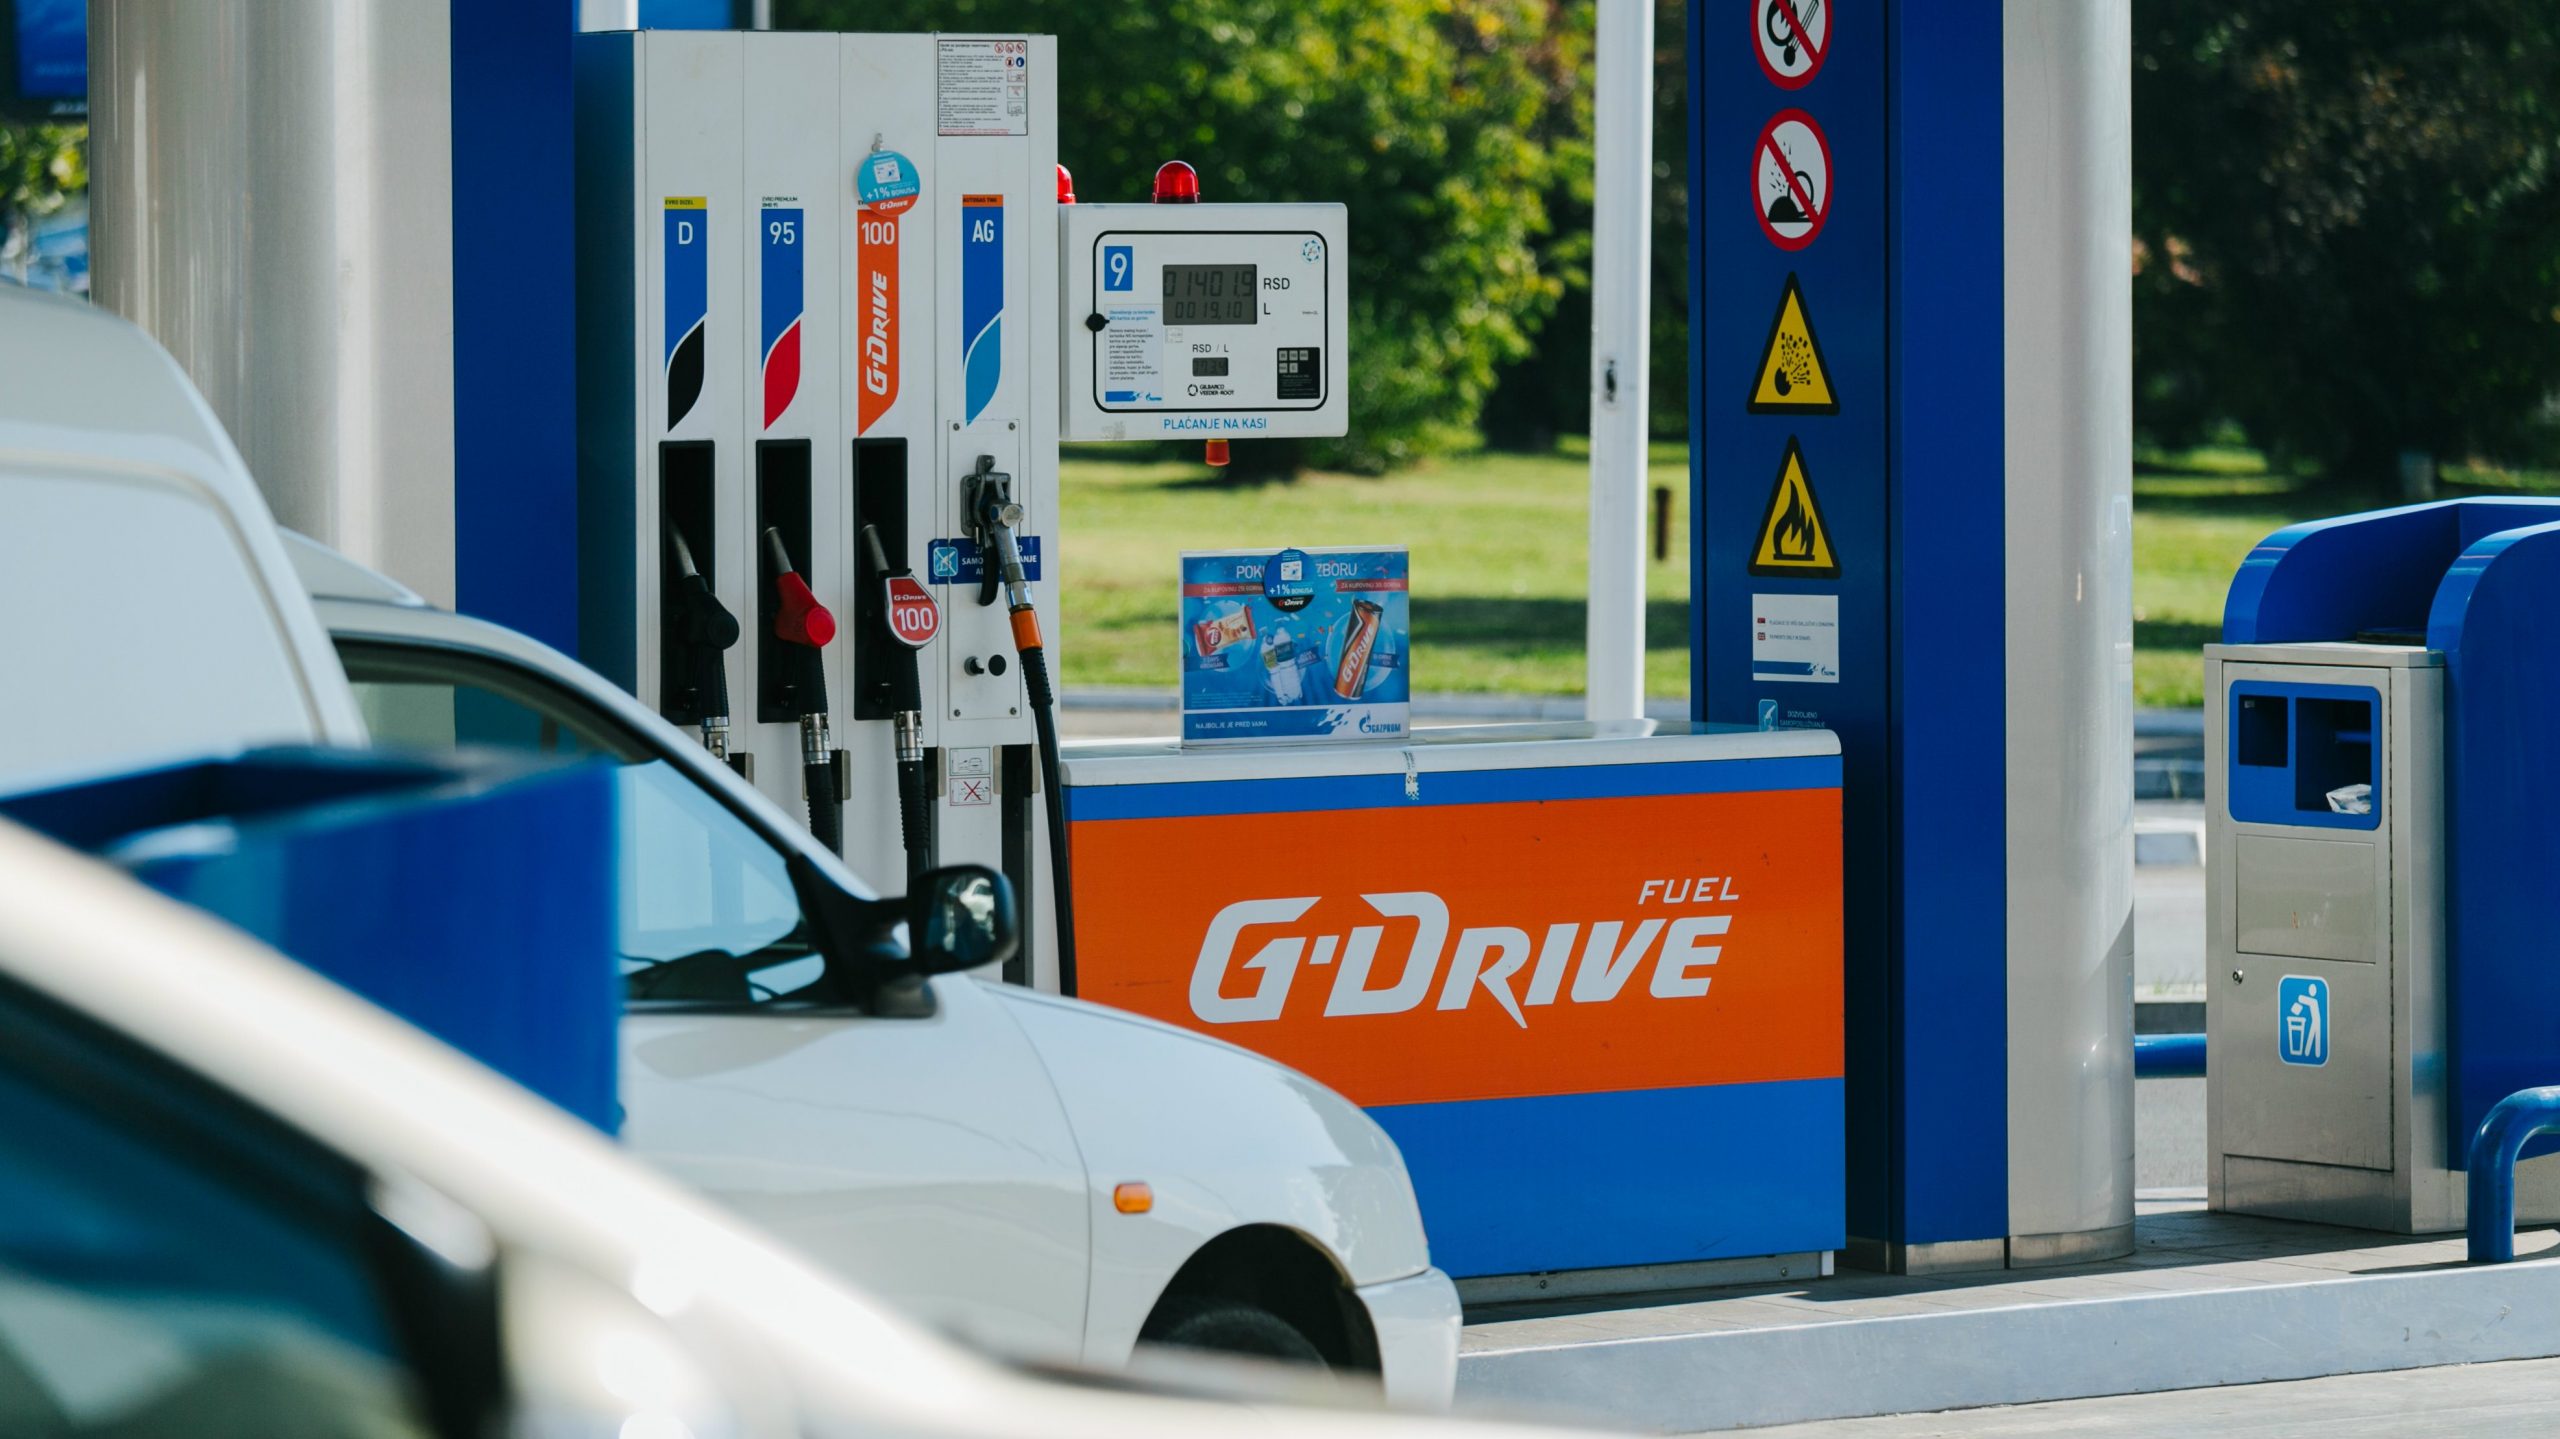 Premijum G-Drive goriva kompanije NIS vode na Svetsko prvenstvo u fudbalu 1